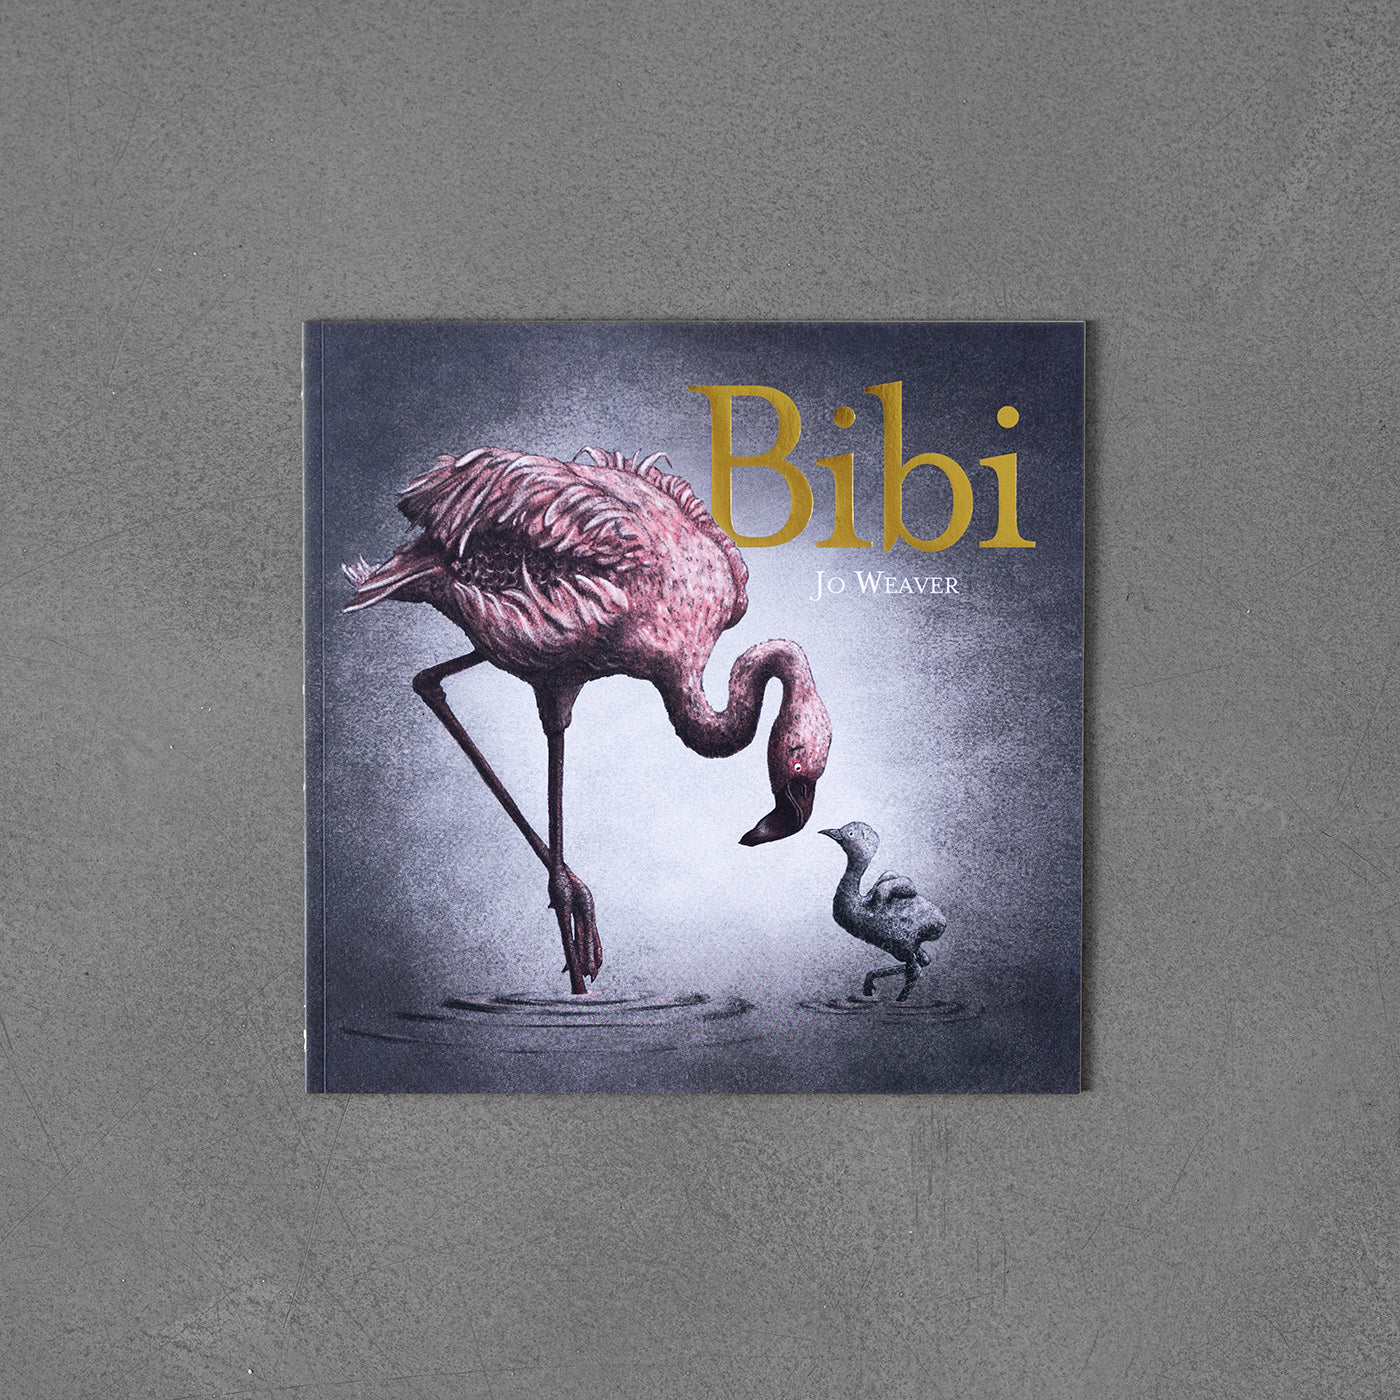 Bibi: A flamingo's Tale – Jo Weaver